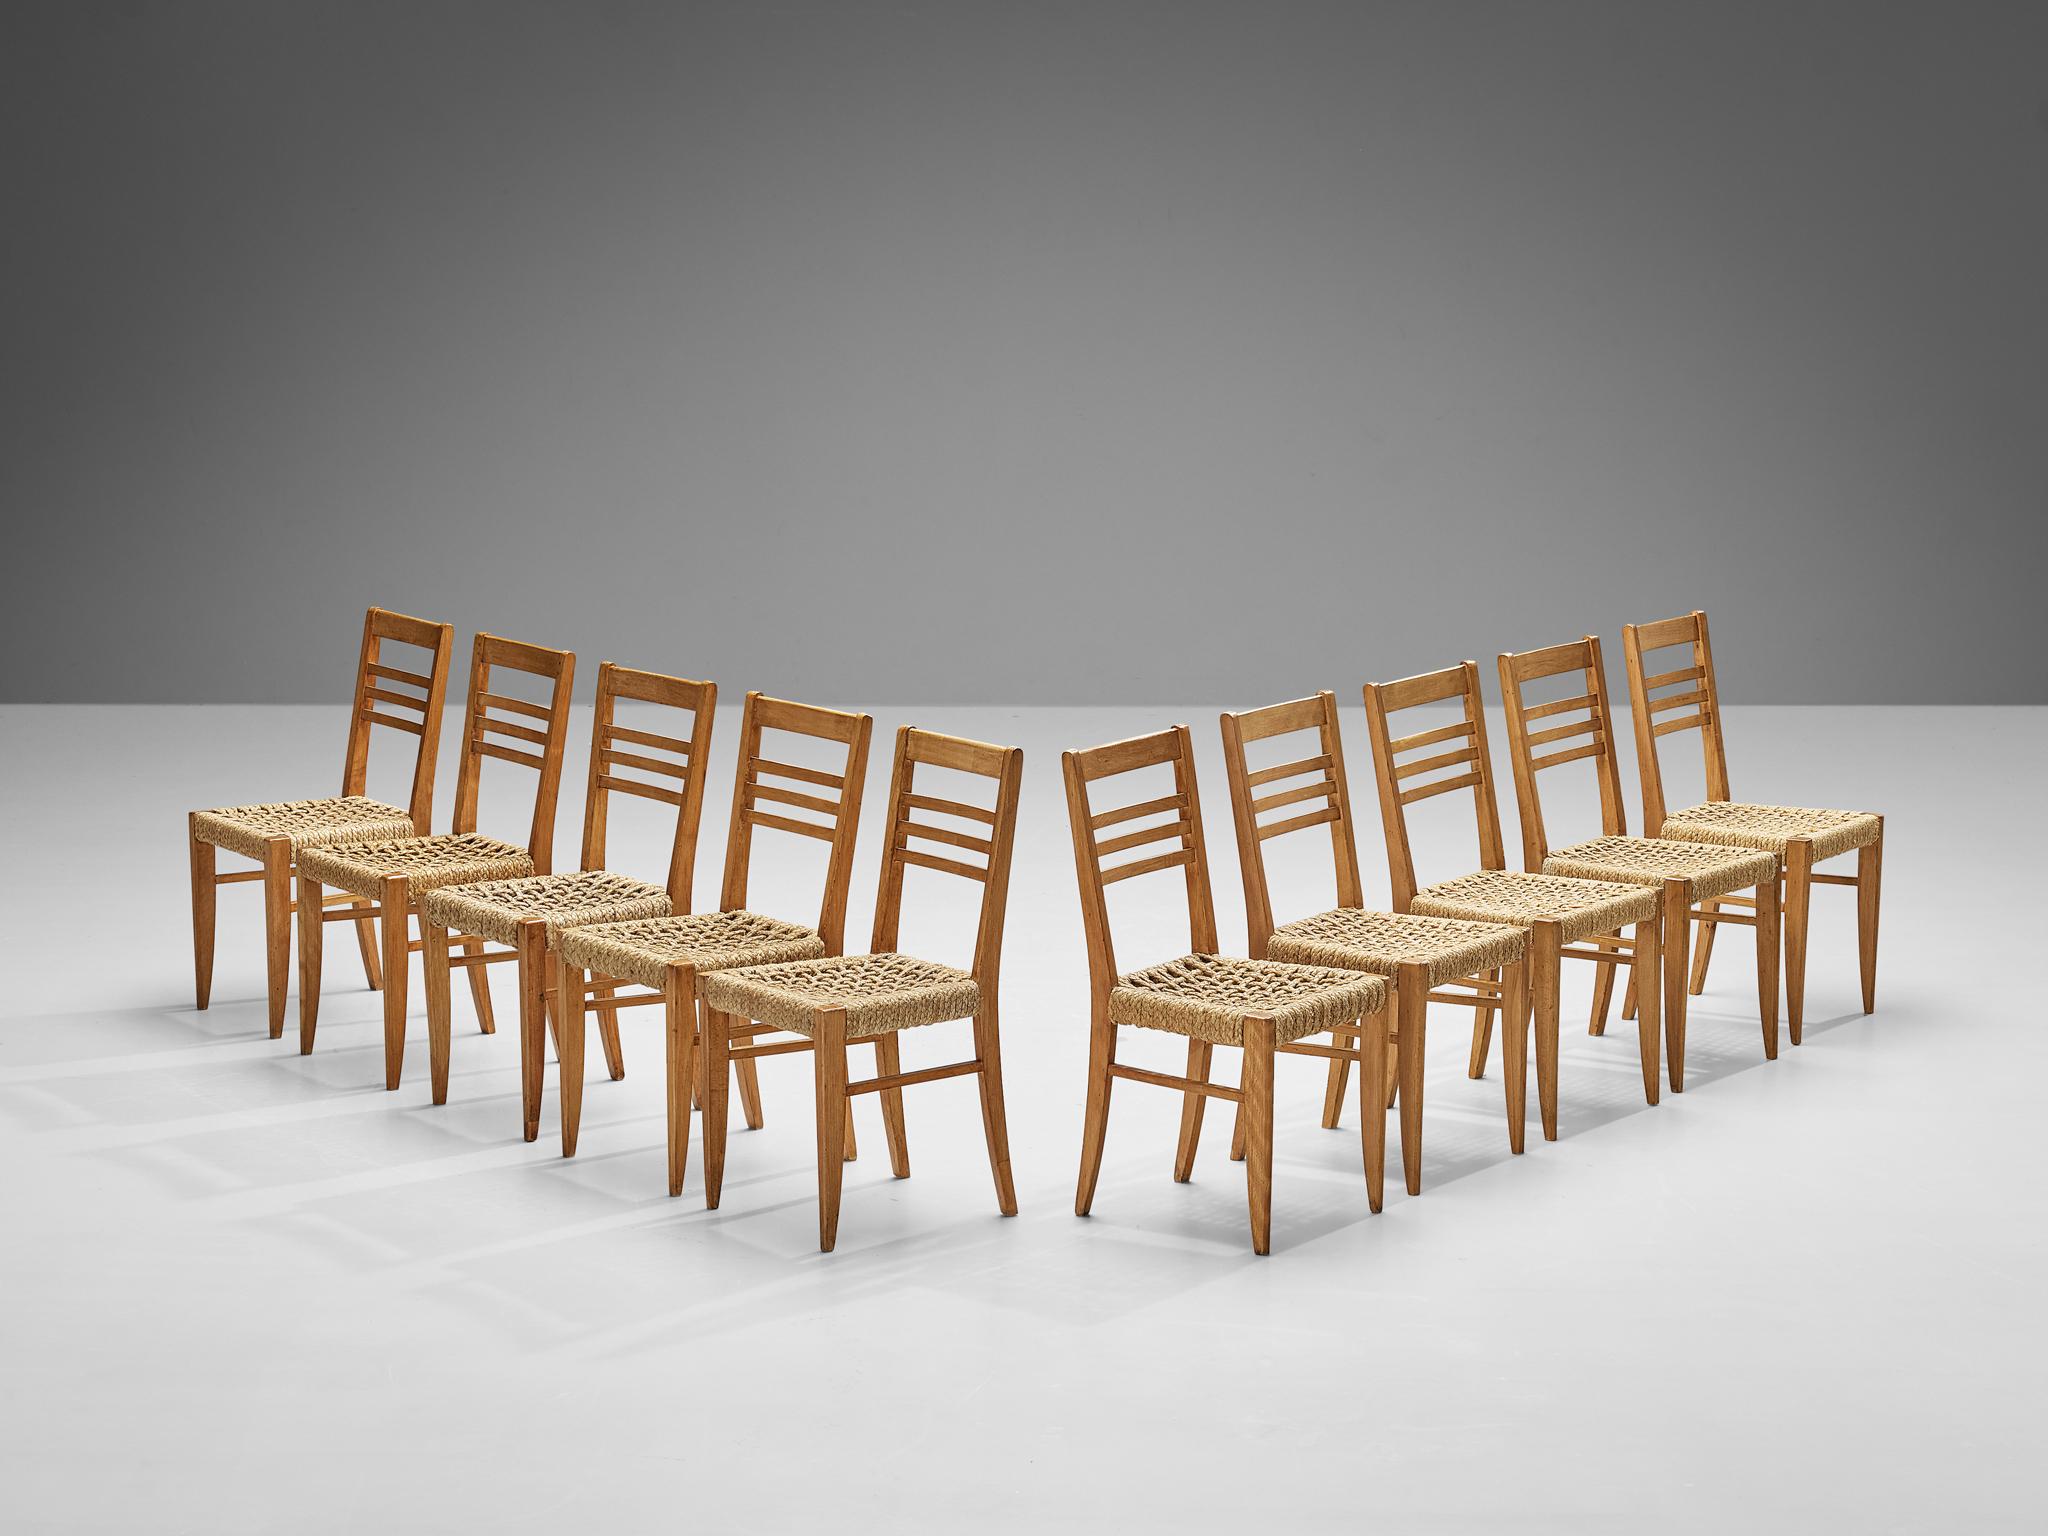 Adrien Audoux et Frida Minet pour Vibo, ensemble de dix fauteuils, hêtre, corde de chanvre, France, fin des années 1940. 

Ensemble de dix chaises de salle à manger naturalistes conçues par Adrien Audoux et Frida Minet. Les sièges sont en chanvre